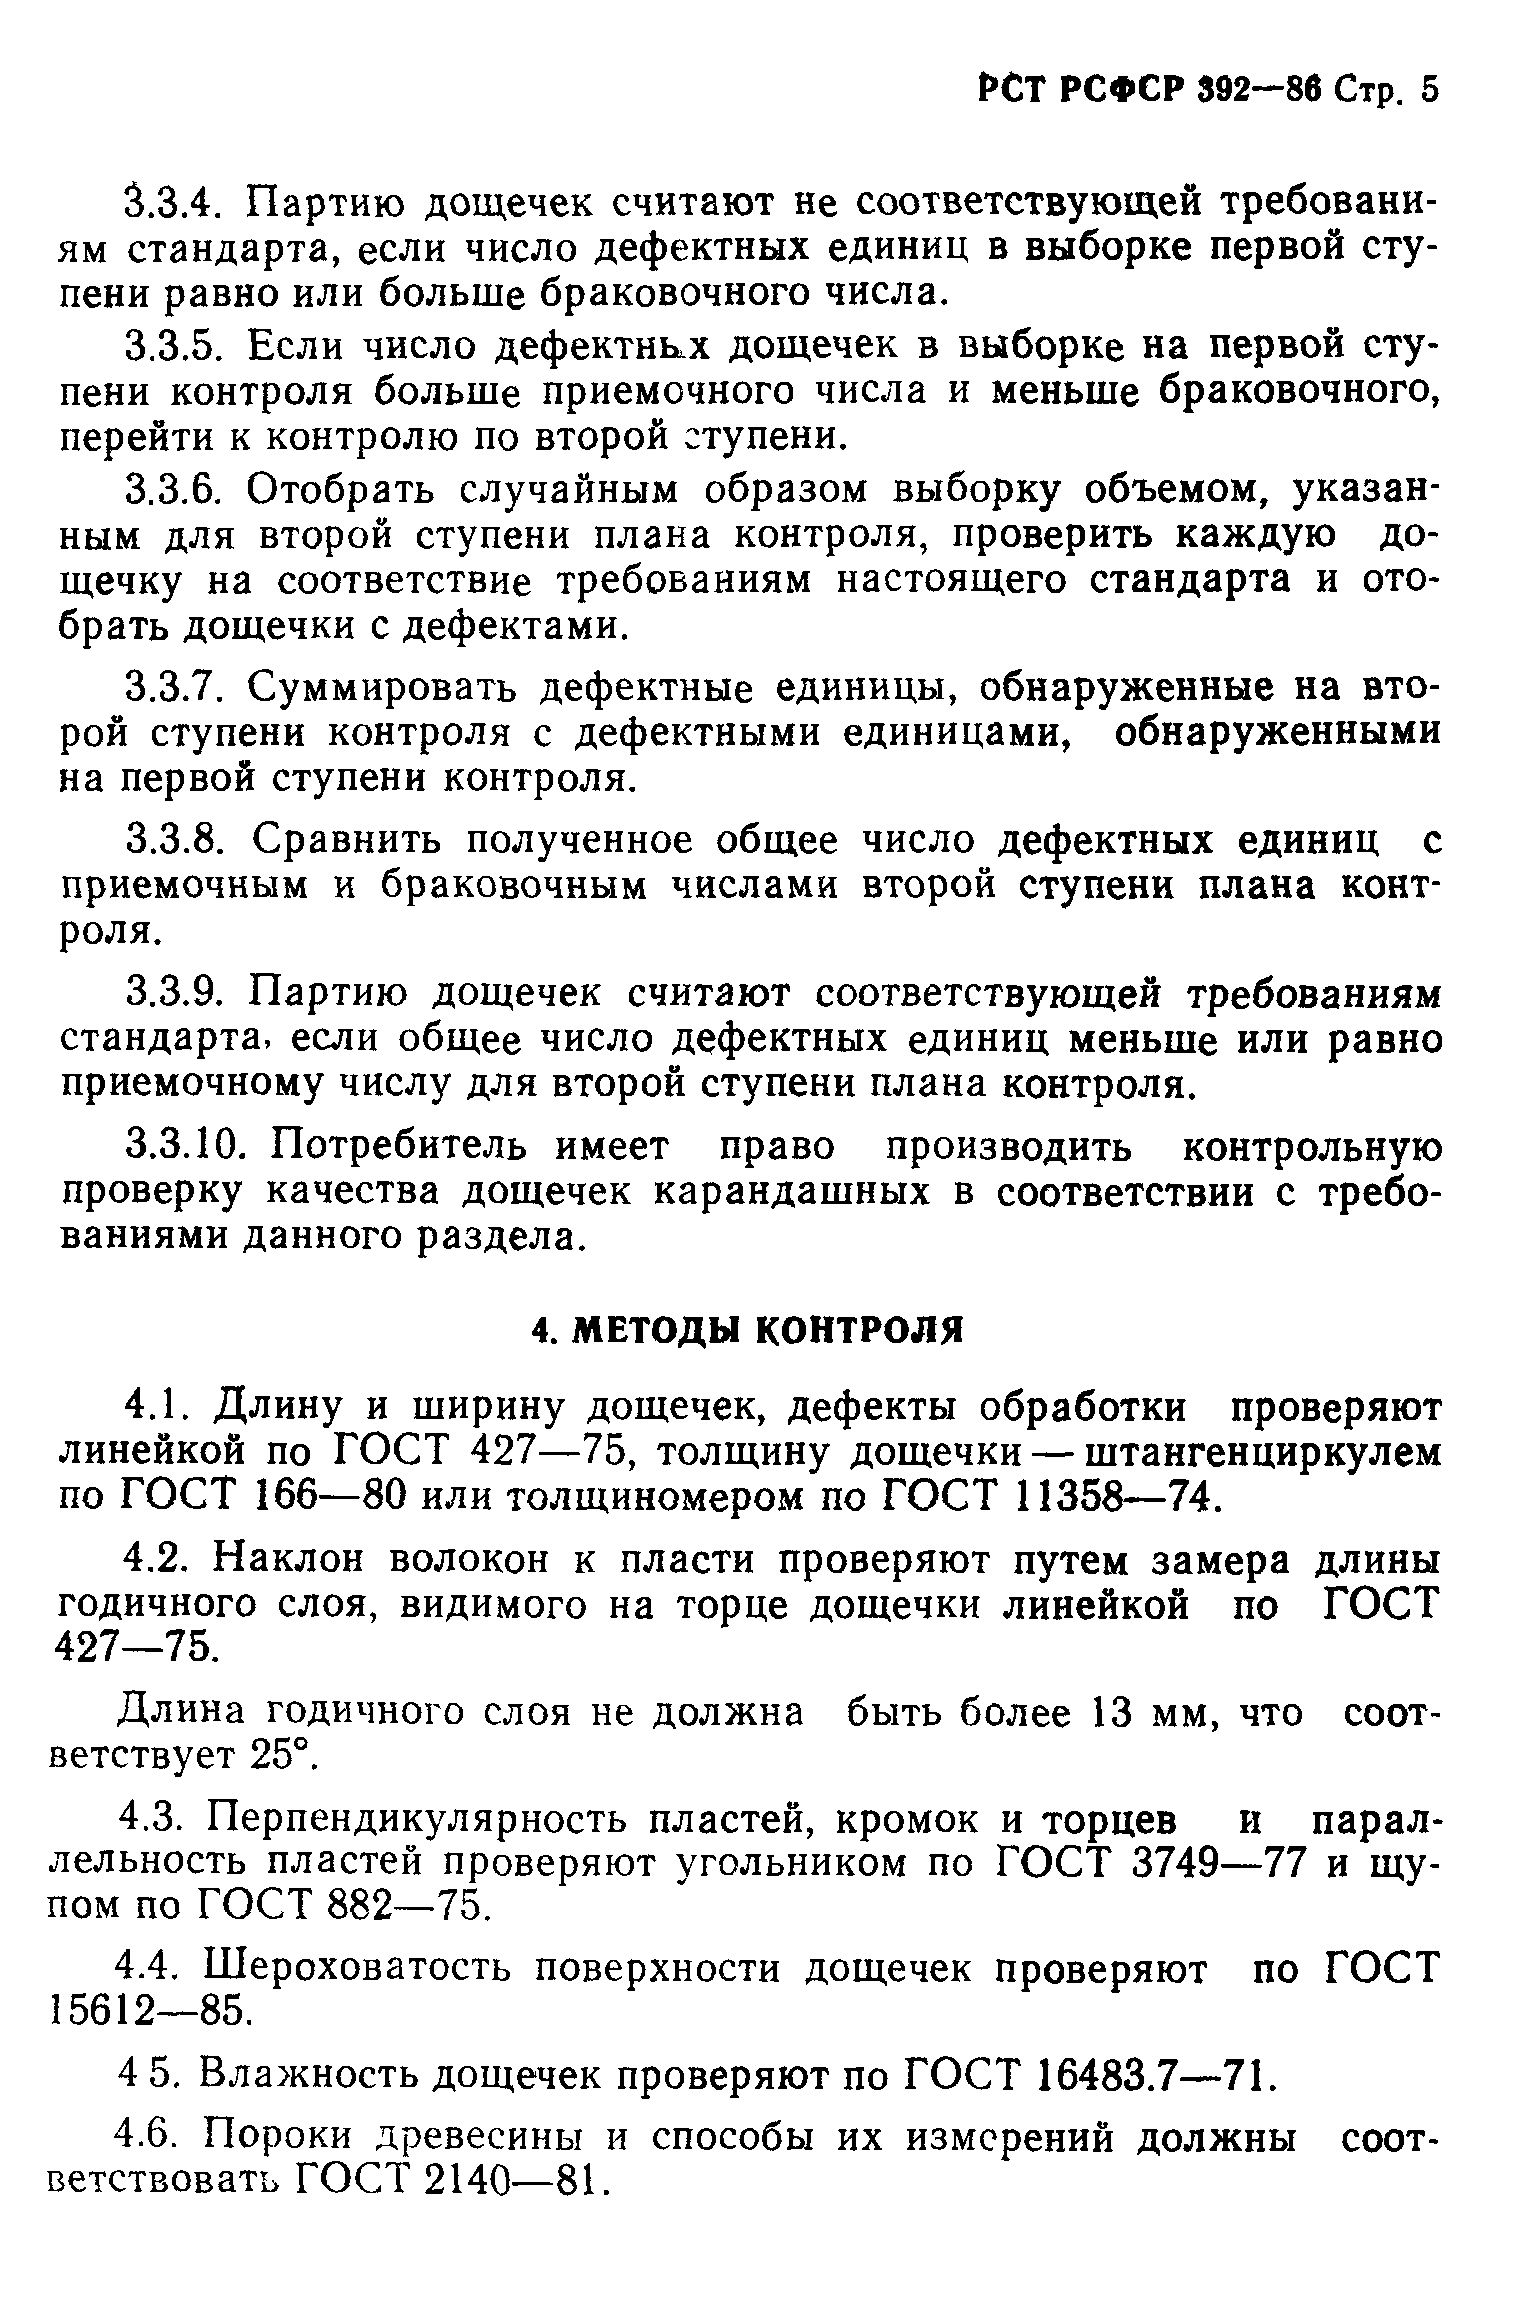 РСТ РСФСР 392-86